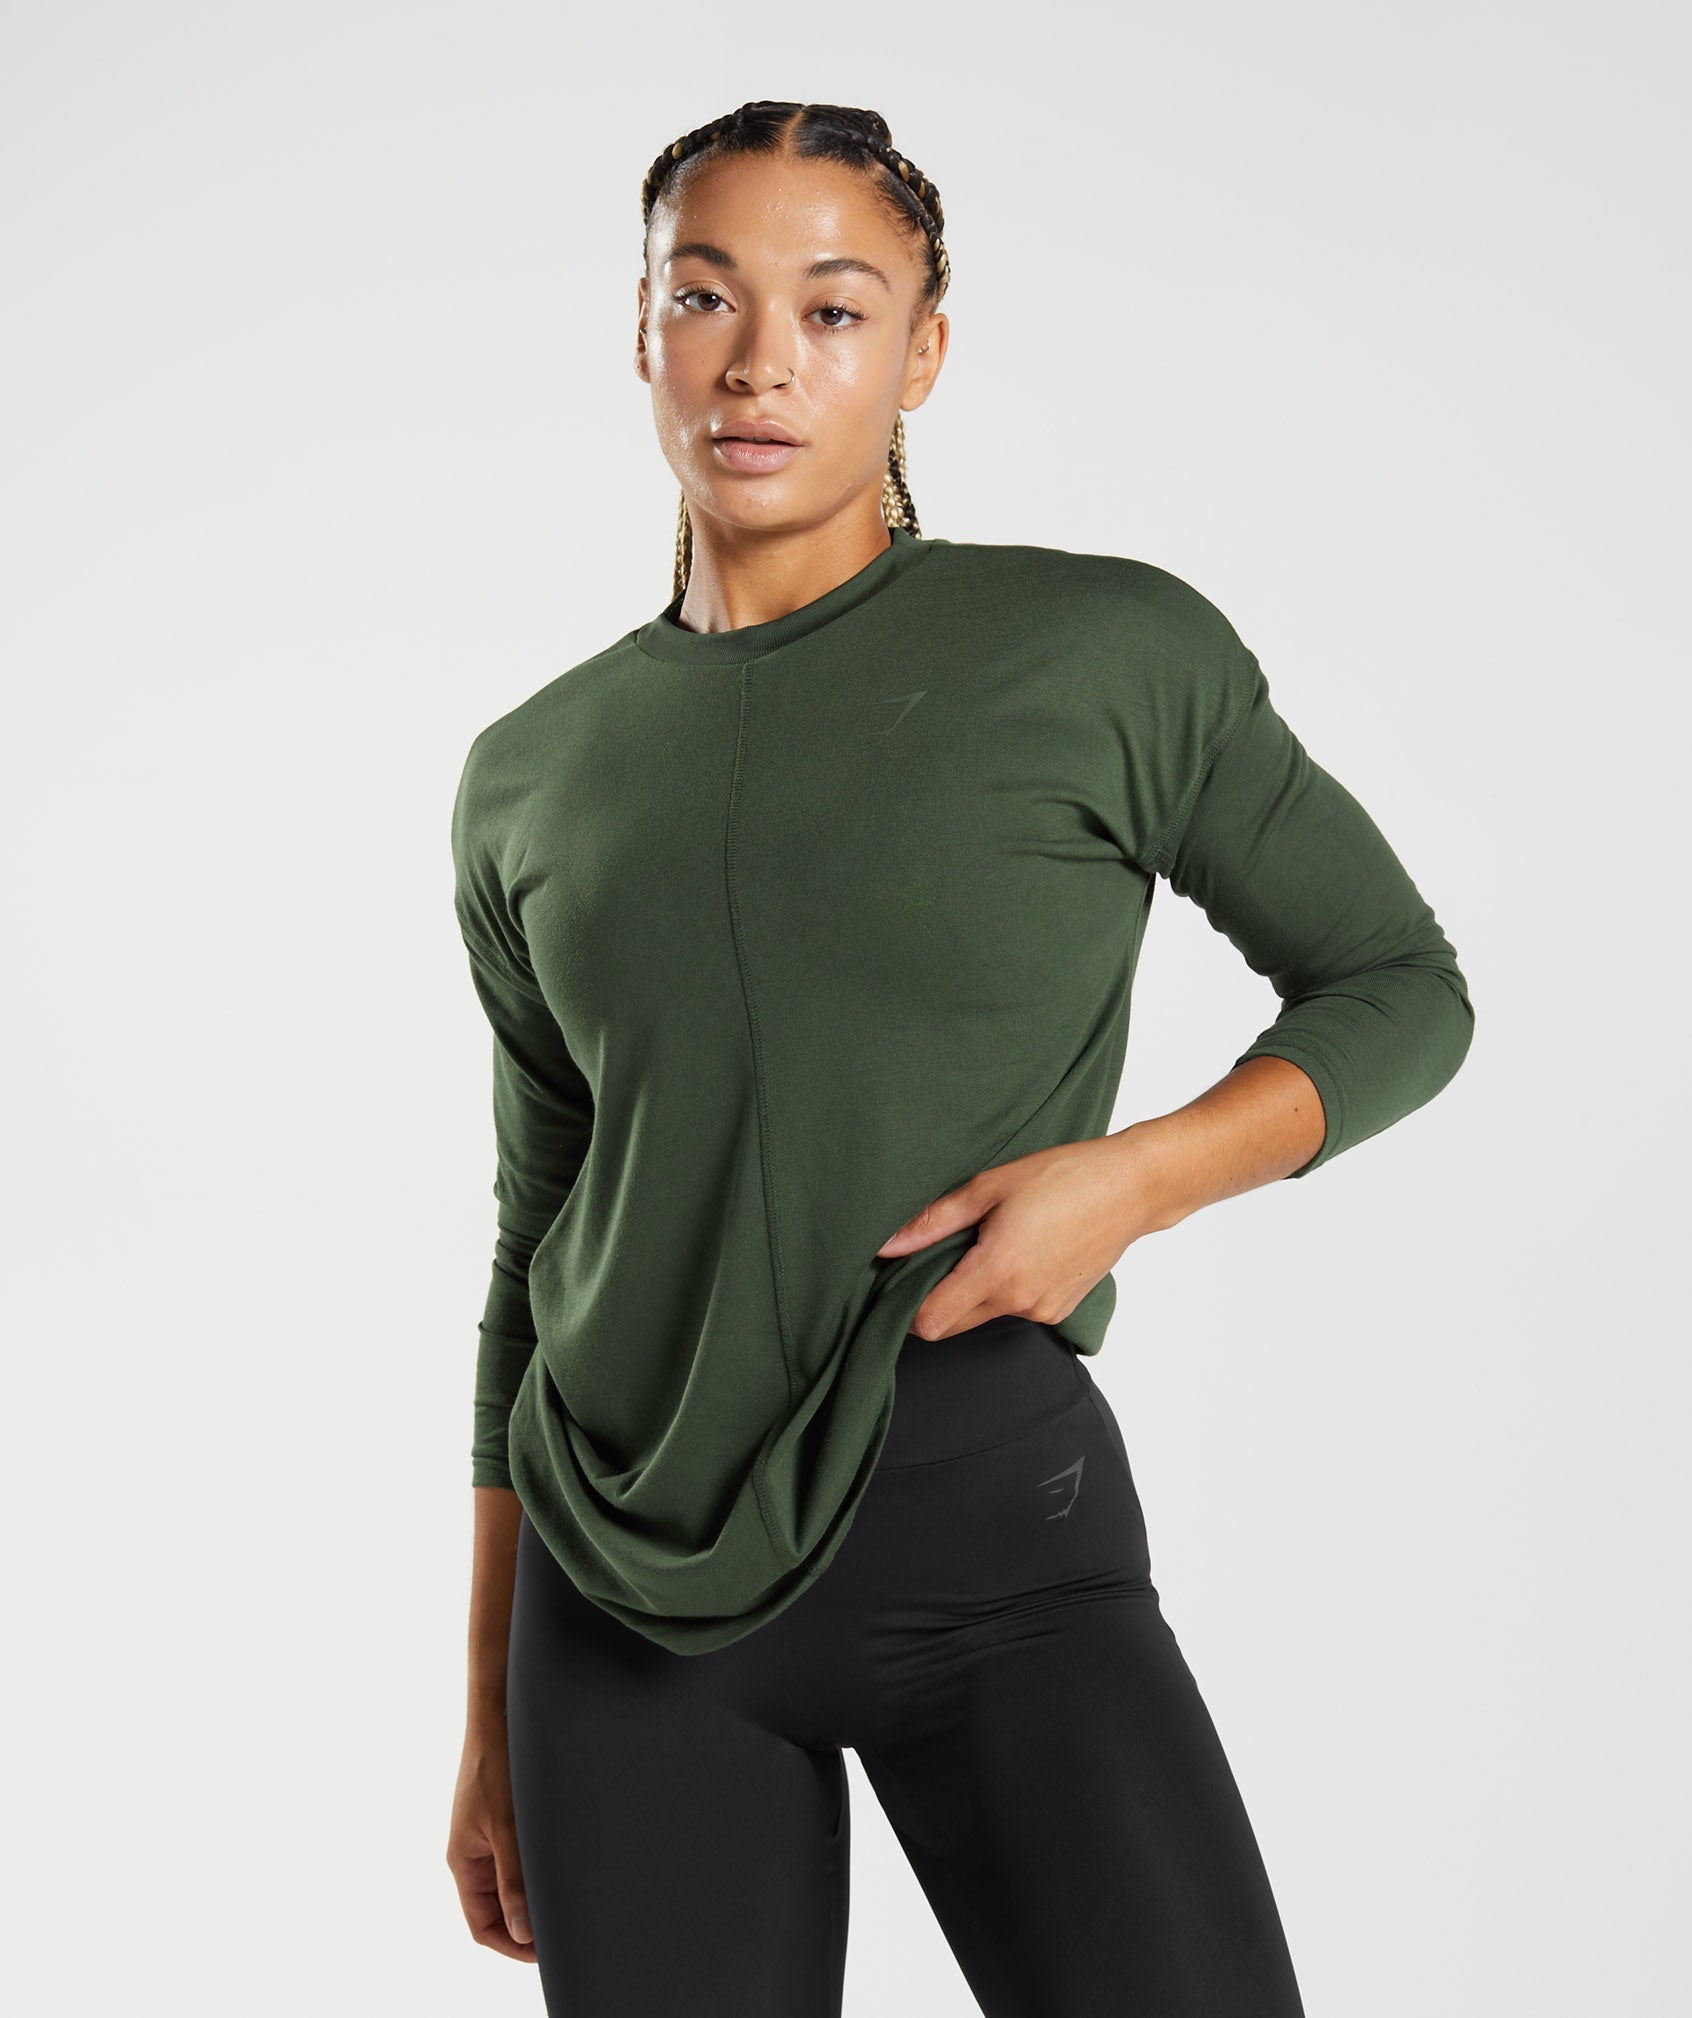 Gymshark GS Power Long Sleeve T-Shirt - Moss Olive